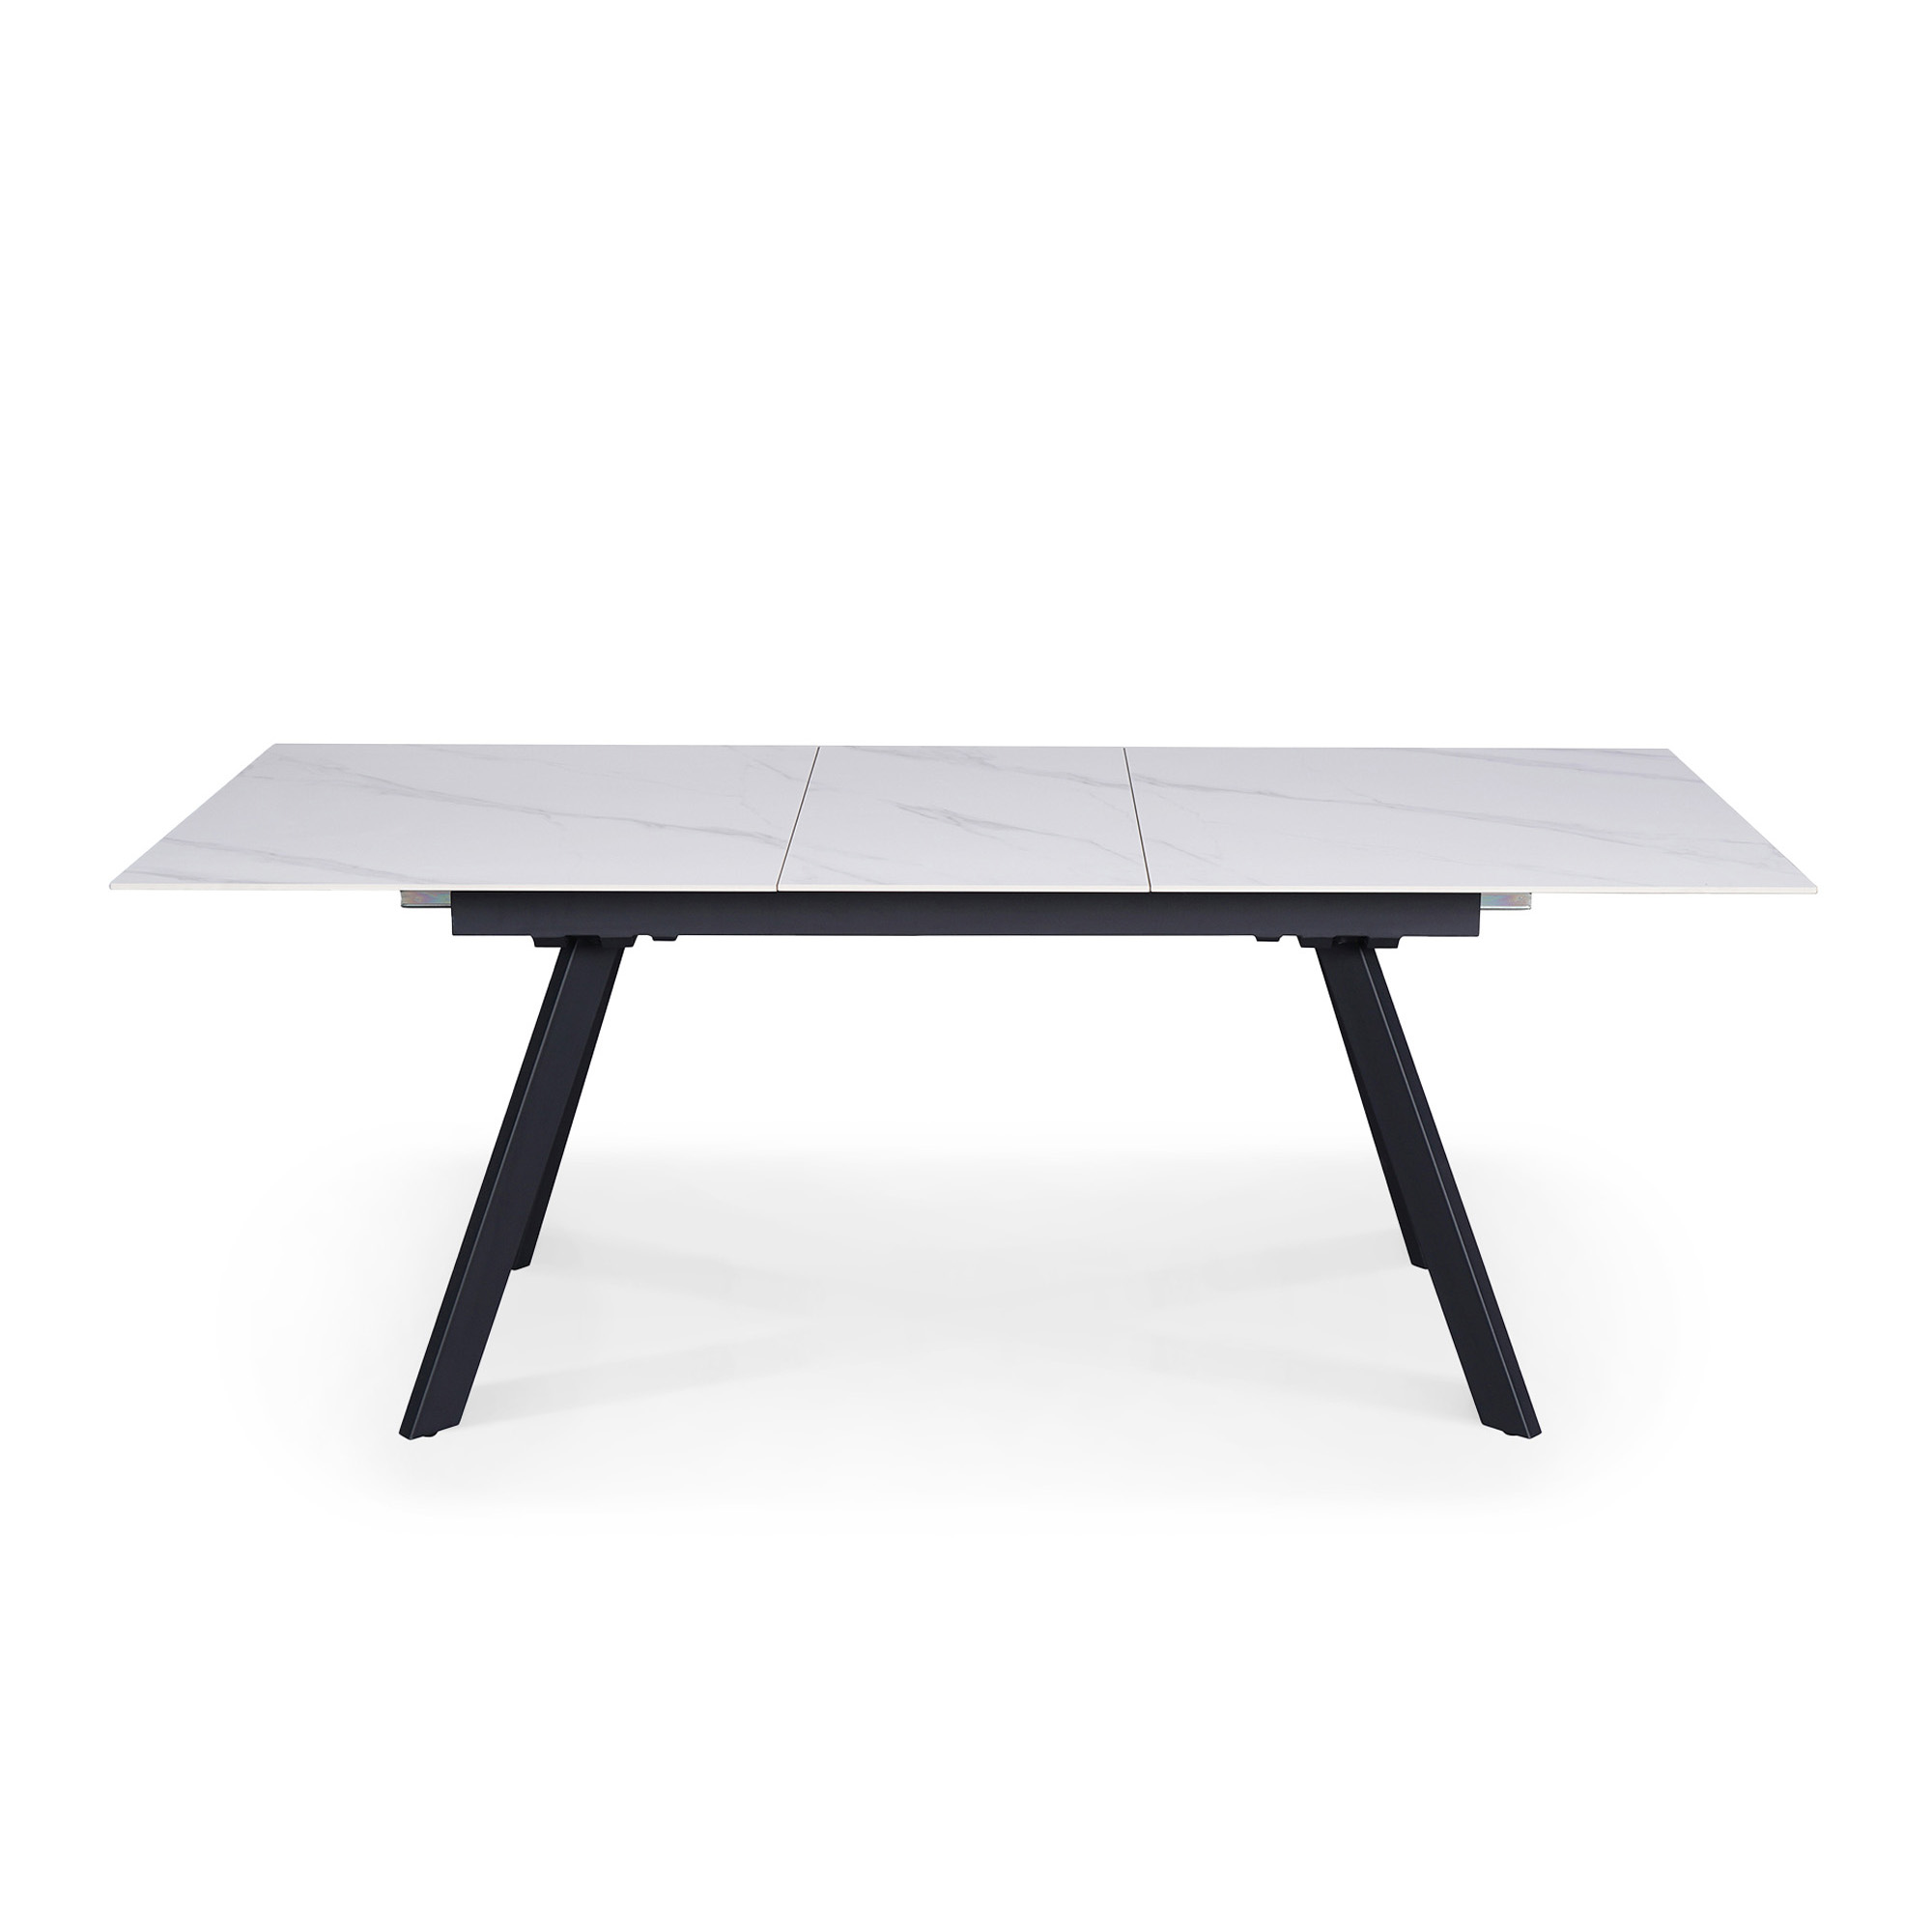 Table à manger rectangulaire extensible en céramique blanc pieds en métal noir